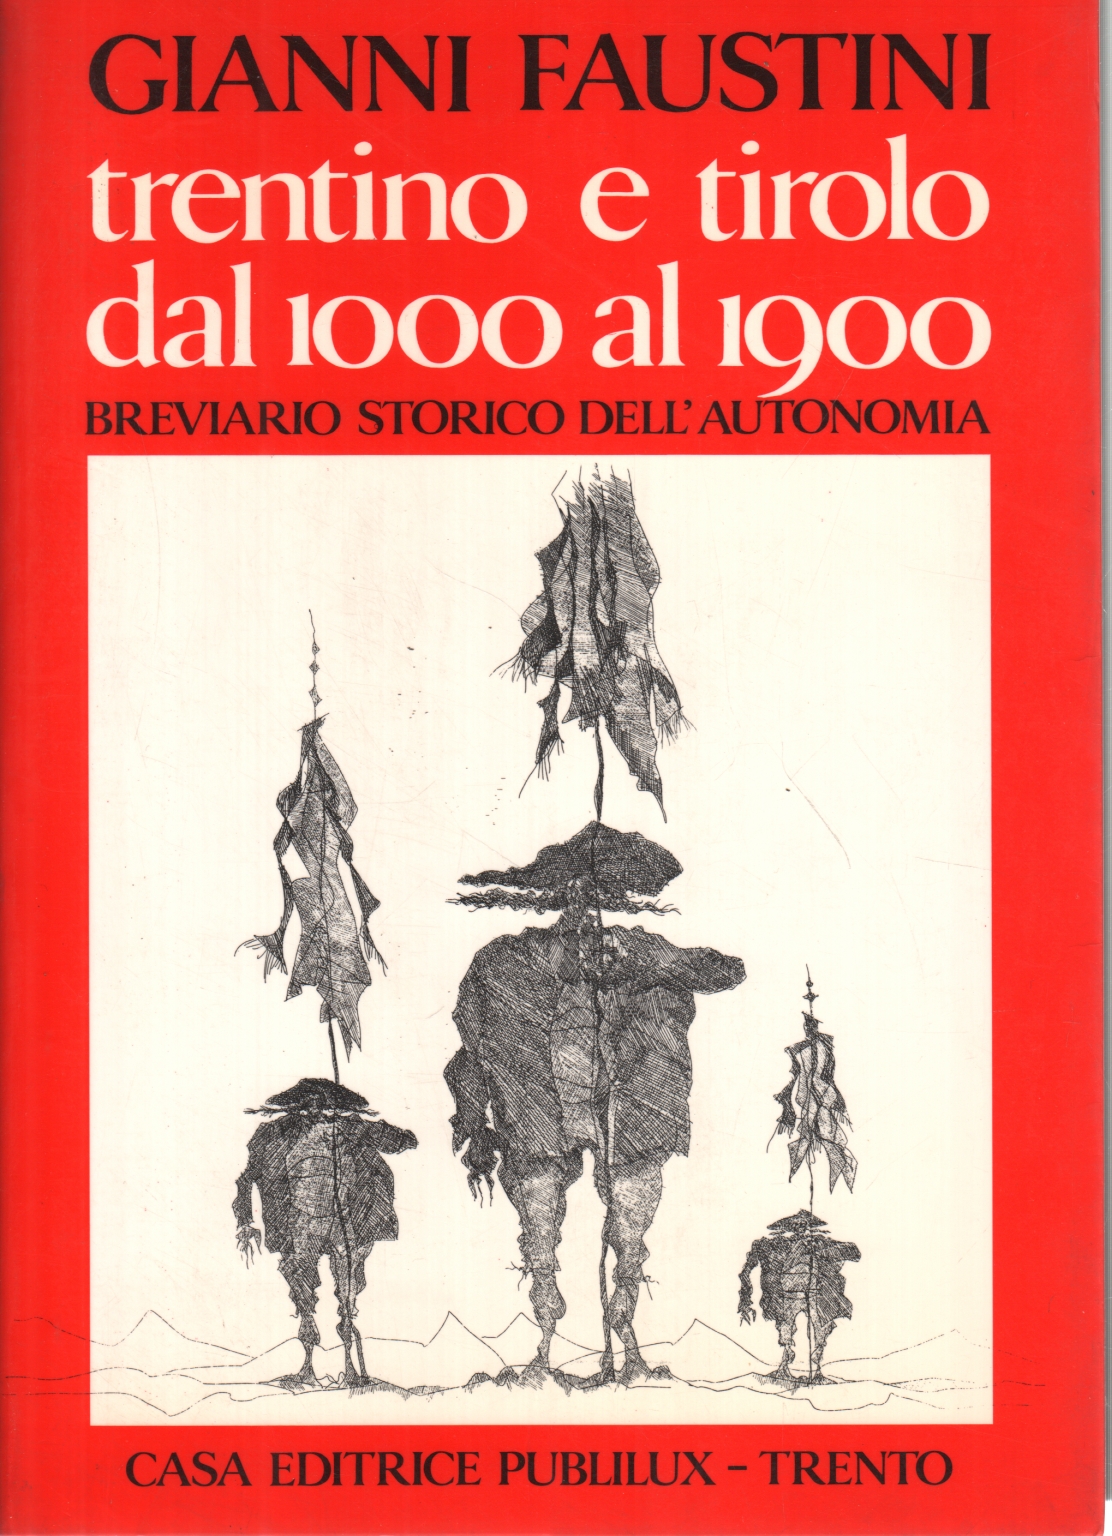 El Trentino y el Tirol, de 1000 a 1900, Gianni Faustini